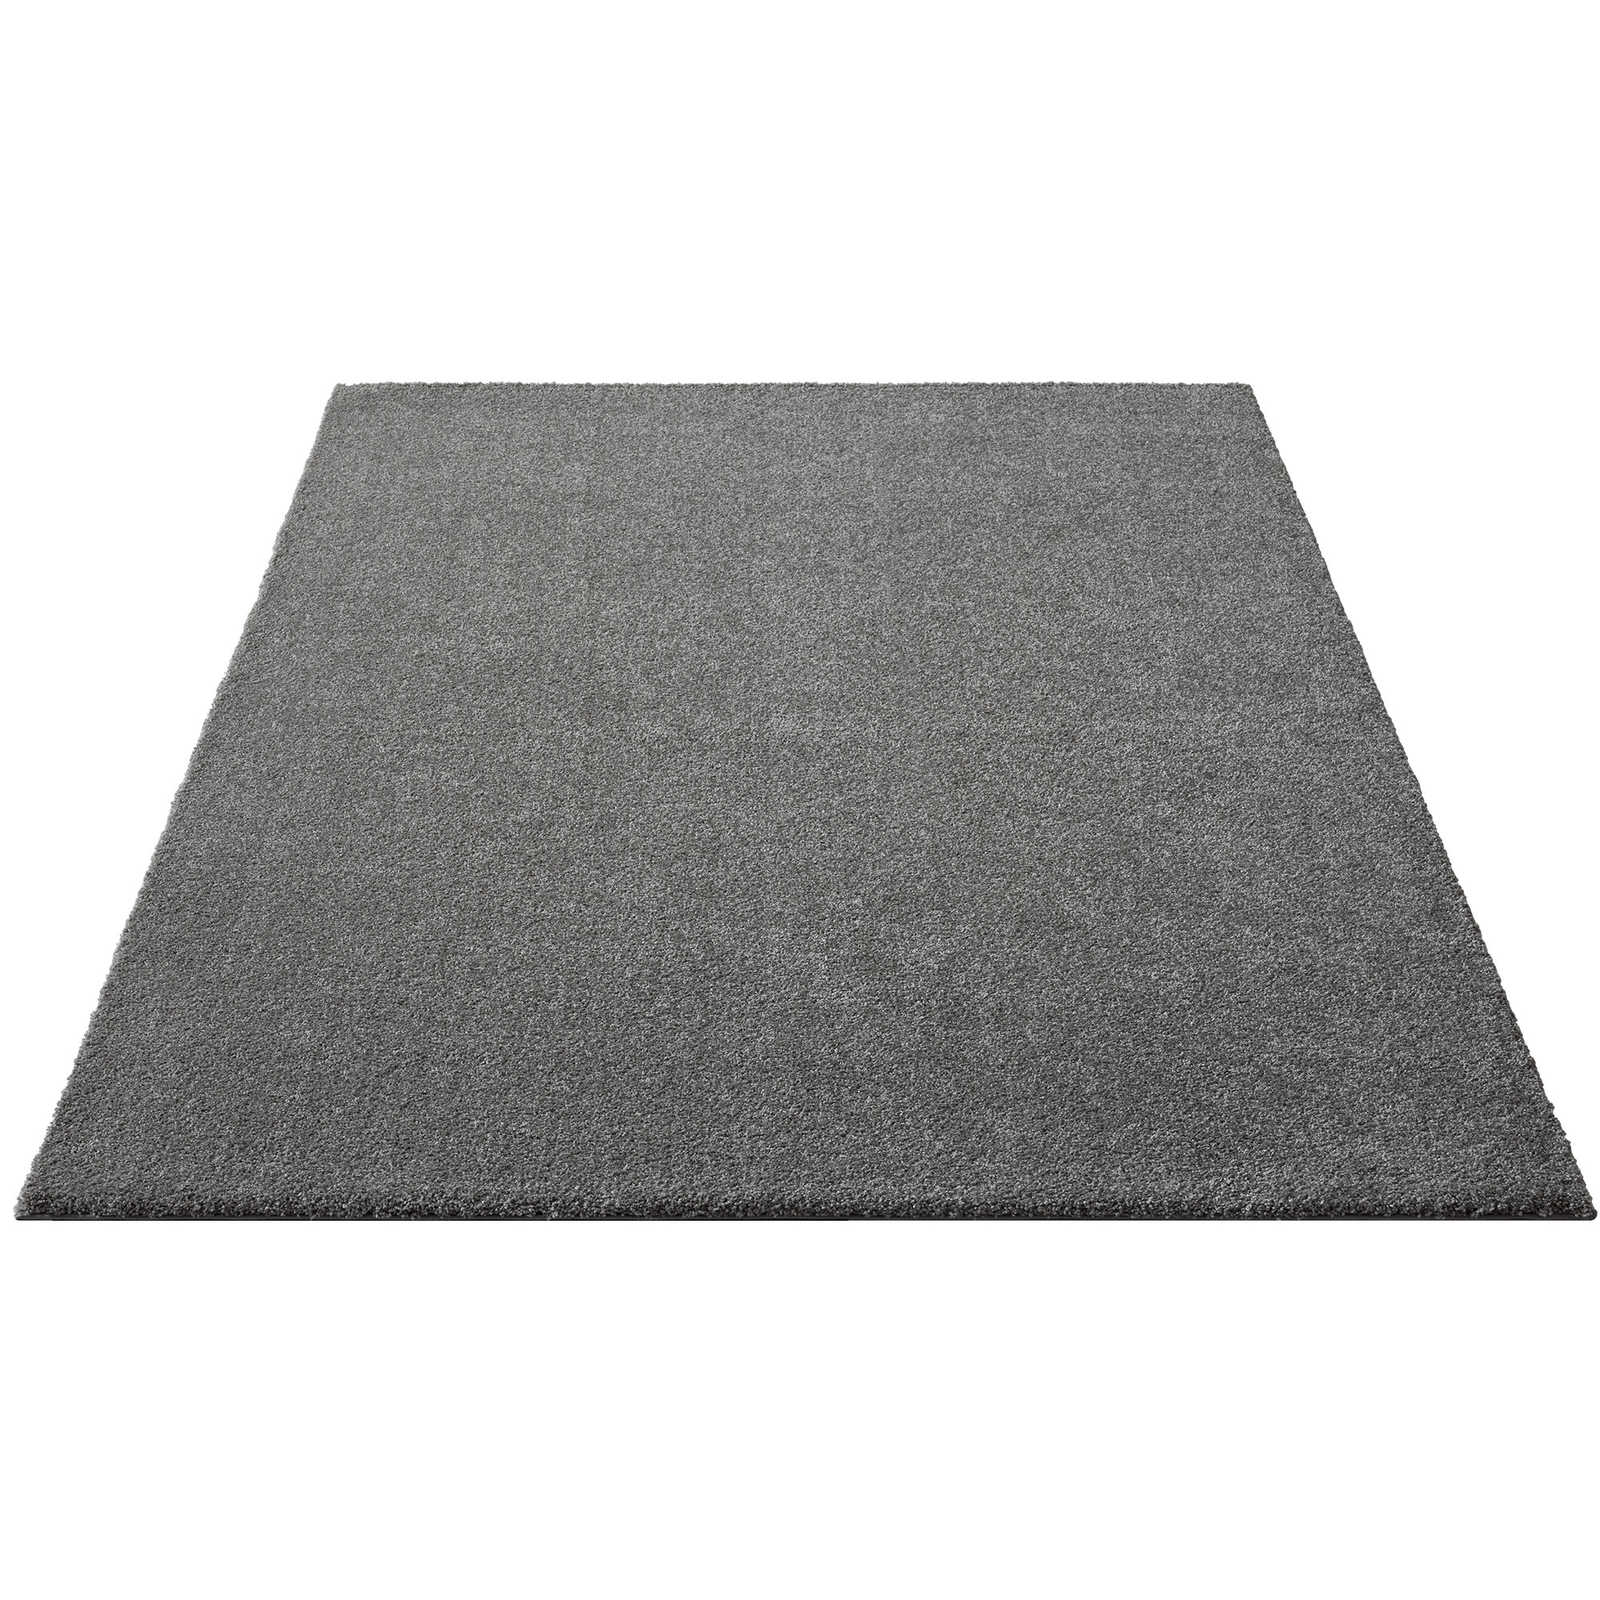 Flauschiger Kurzflor Teppich in Grau – 290 x 200 cm
